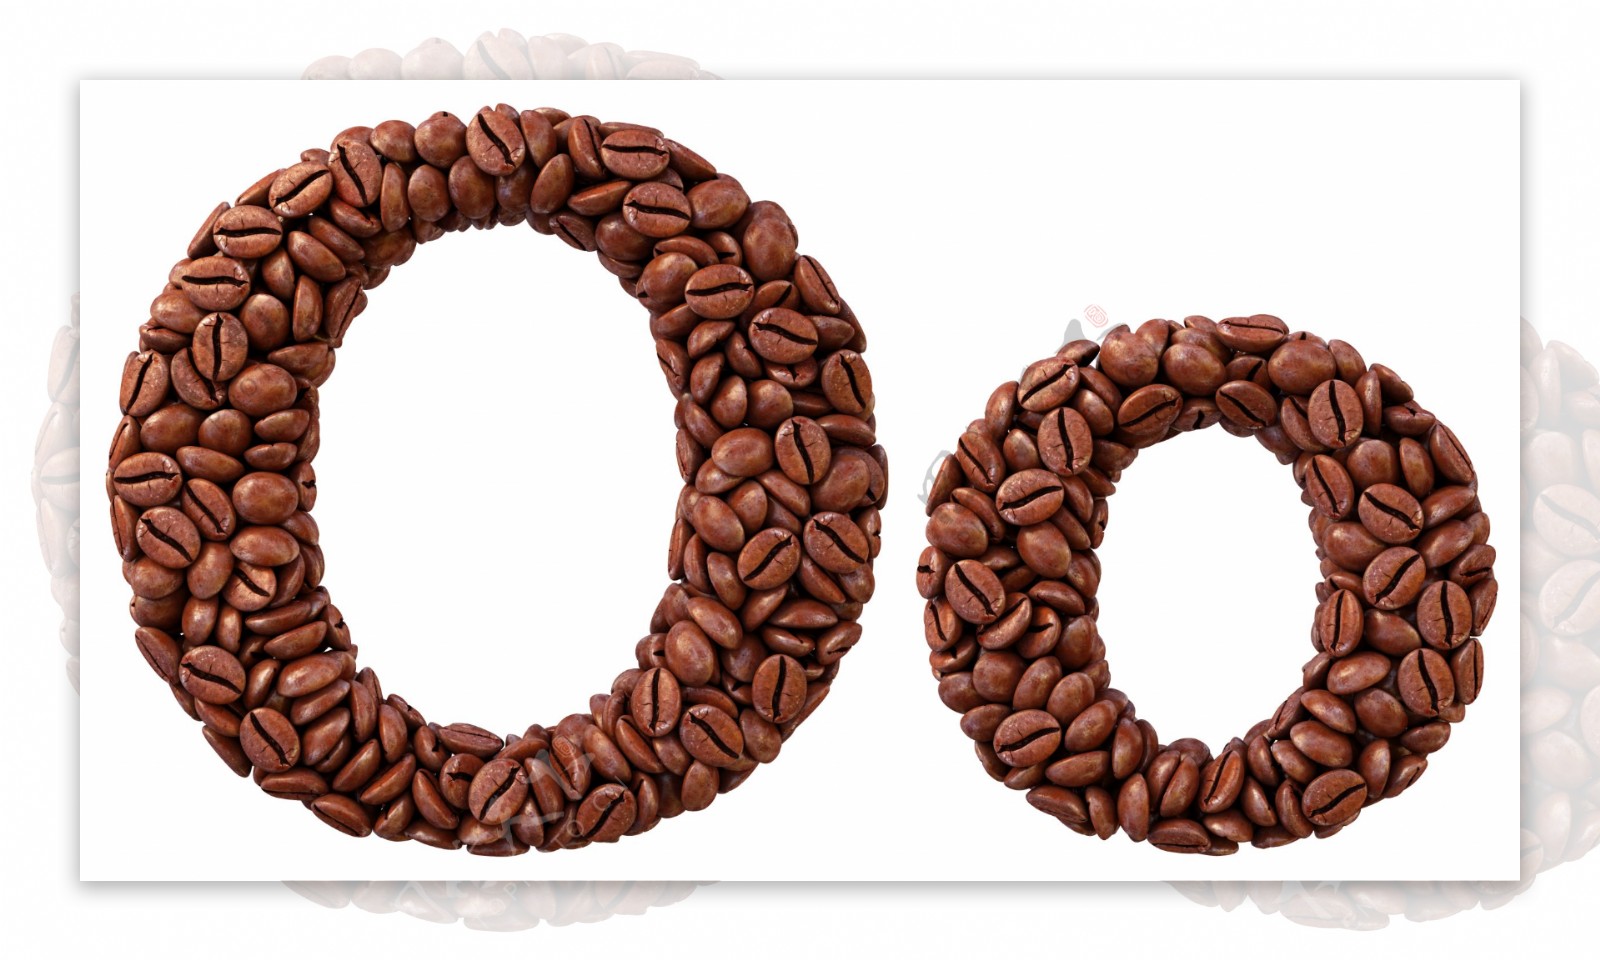 咖啡豆组成的字母O图片